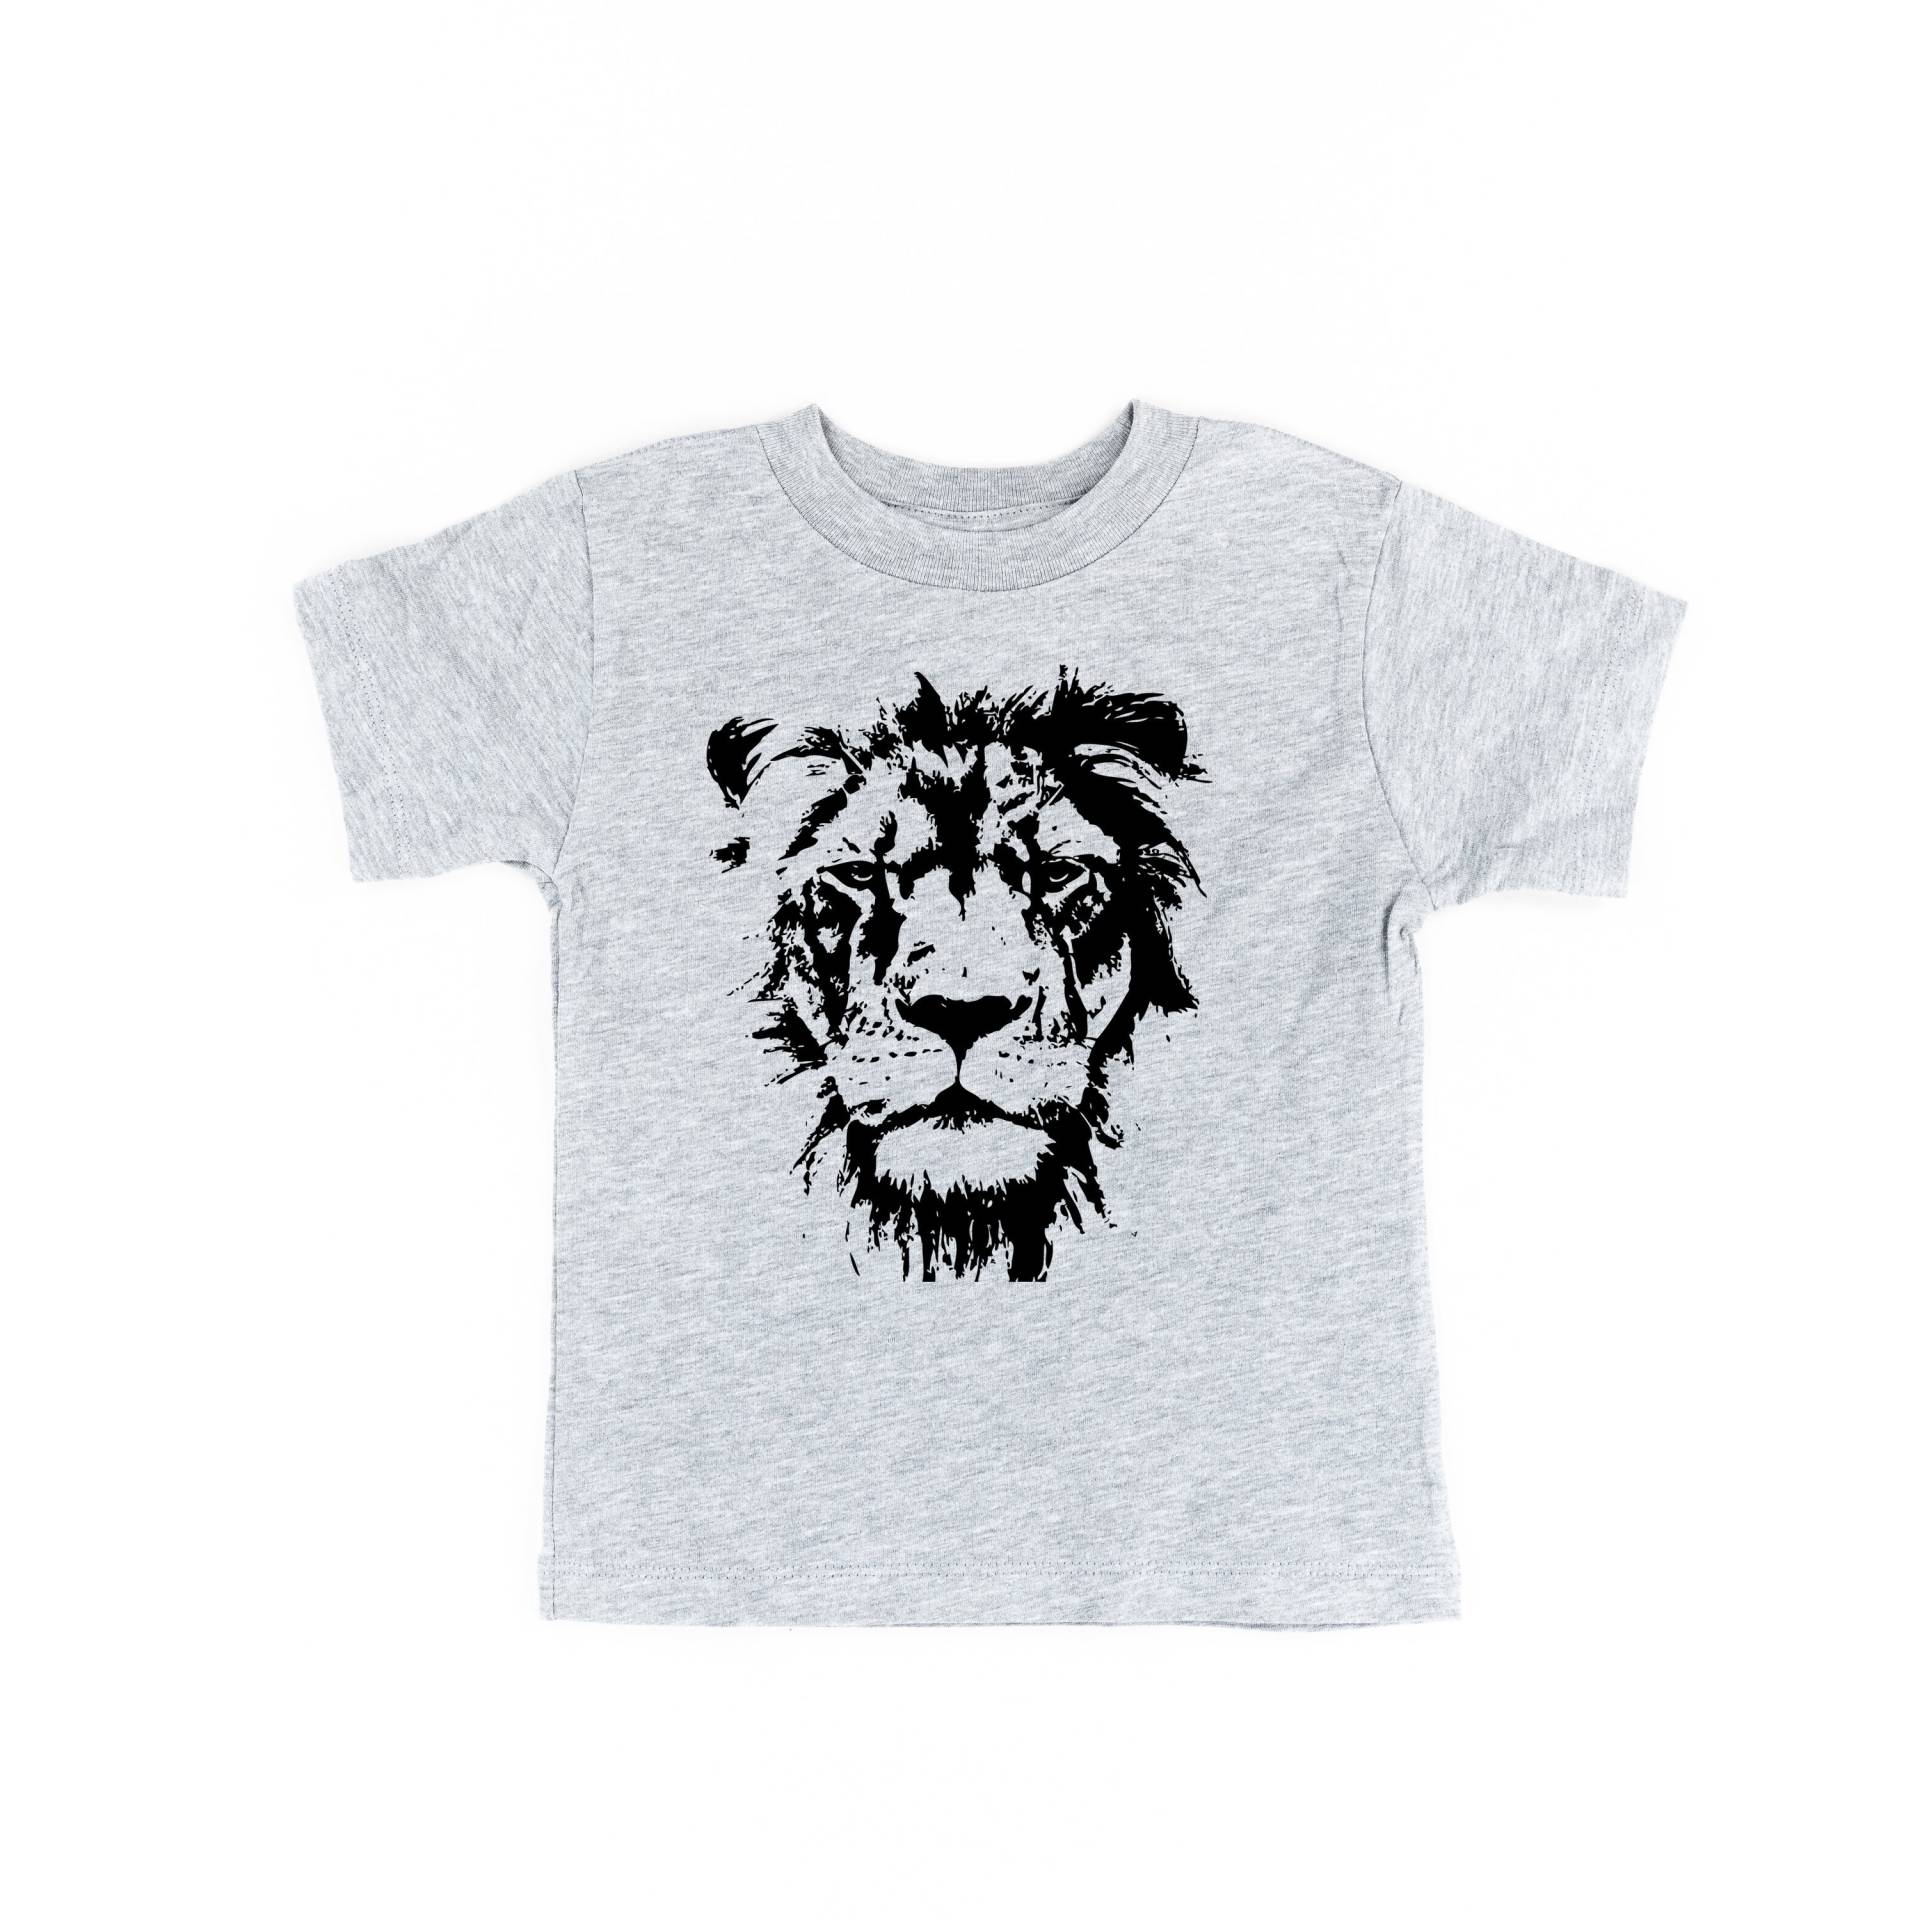 Löwe - Kindershirt | Kleinkind Shirt Littler Girl Junge Zoo Shirts Für Den Kinder Tees von LittleMamaShirtShop